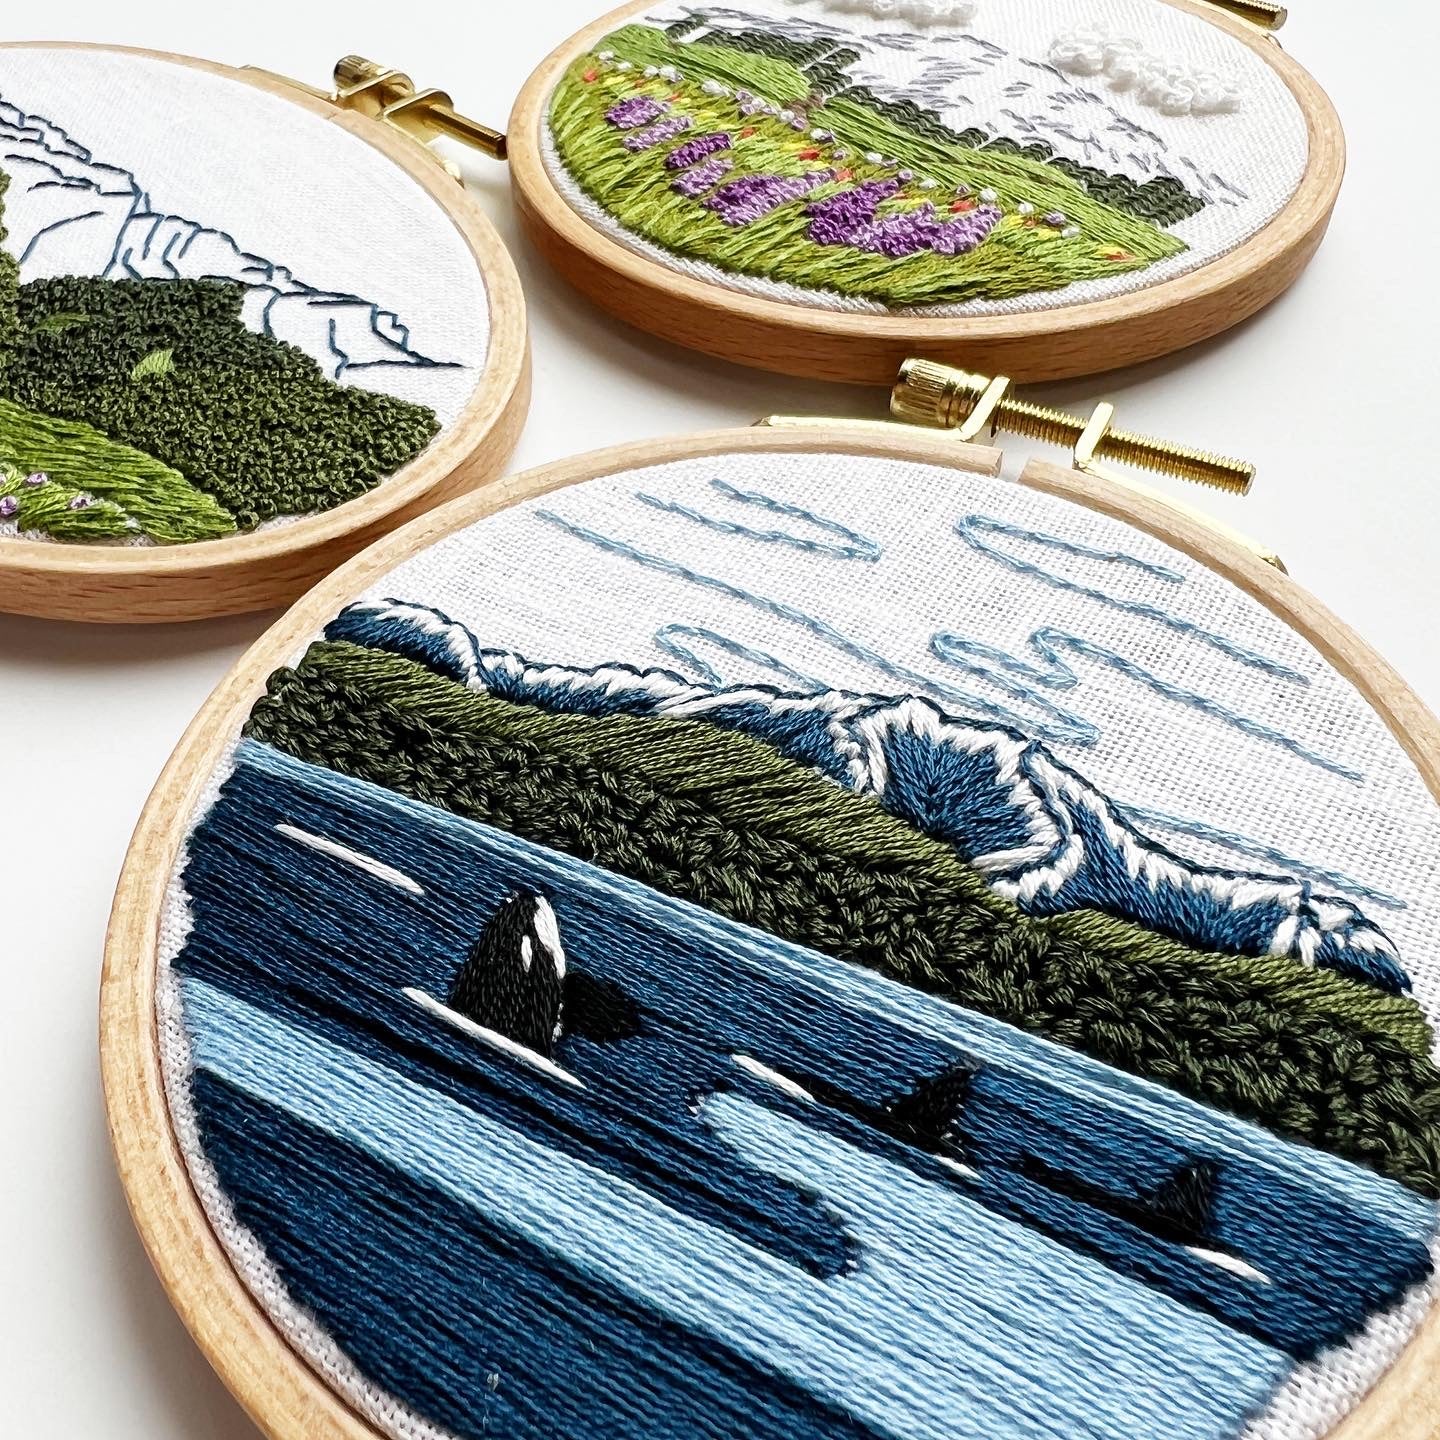 Beginning Landscape Embroidery Workshop